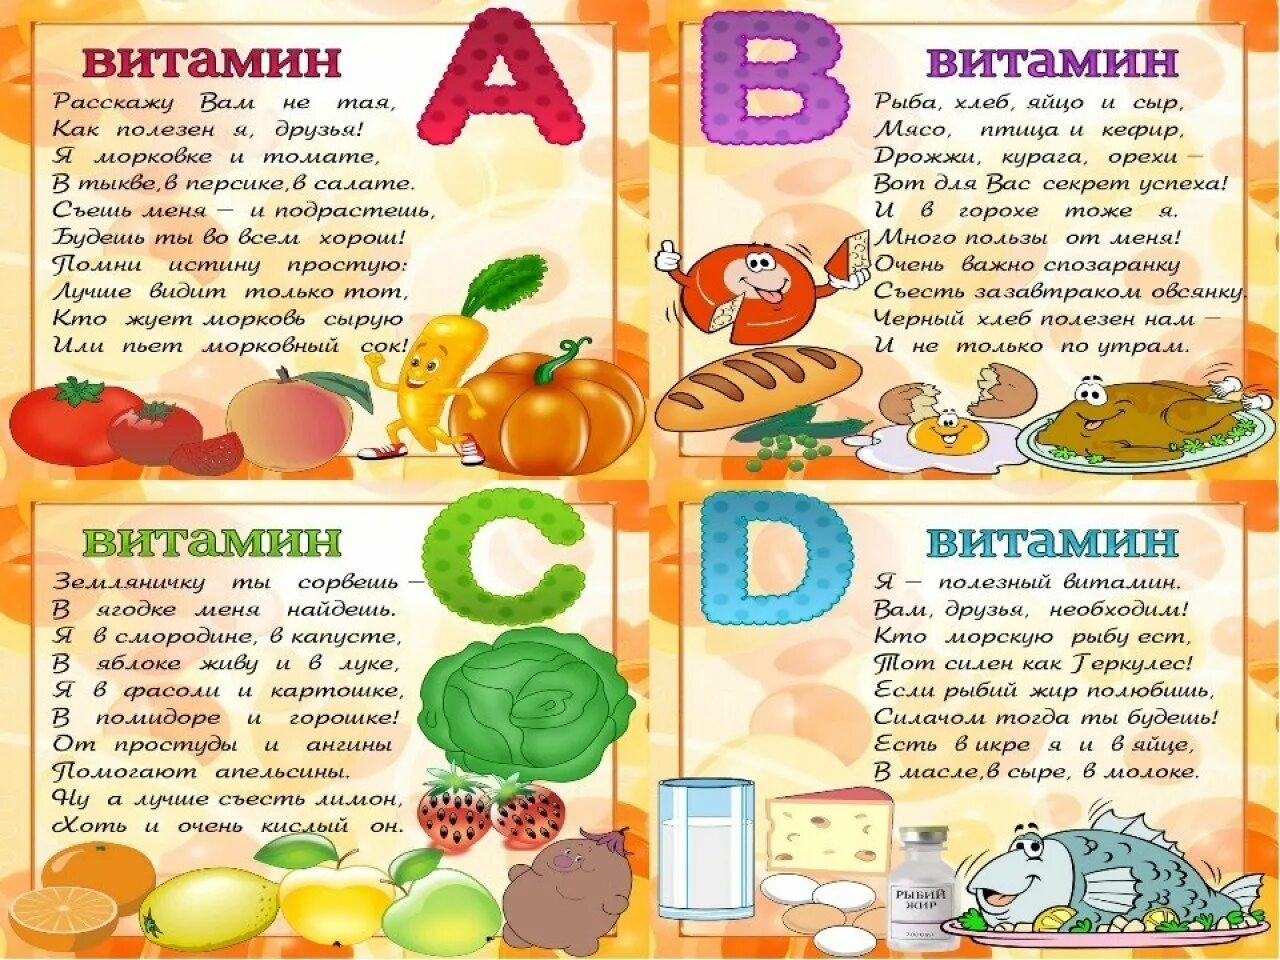 Витамины для детей. Тема витамины для детей. Плакат витамины. Витамины в овощах и фруктах для детей.